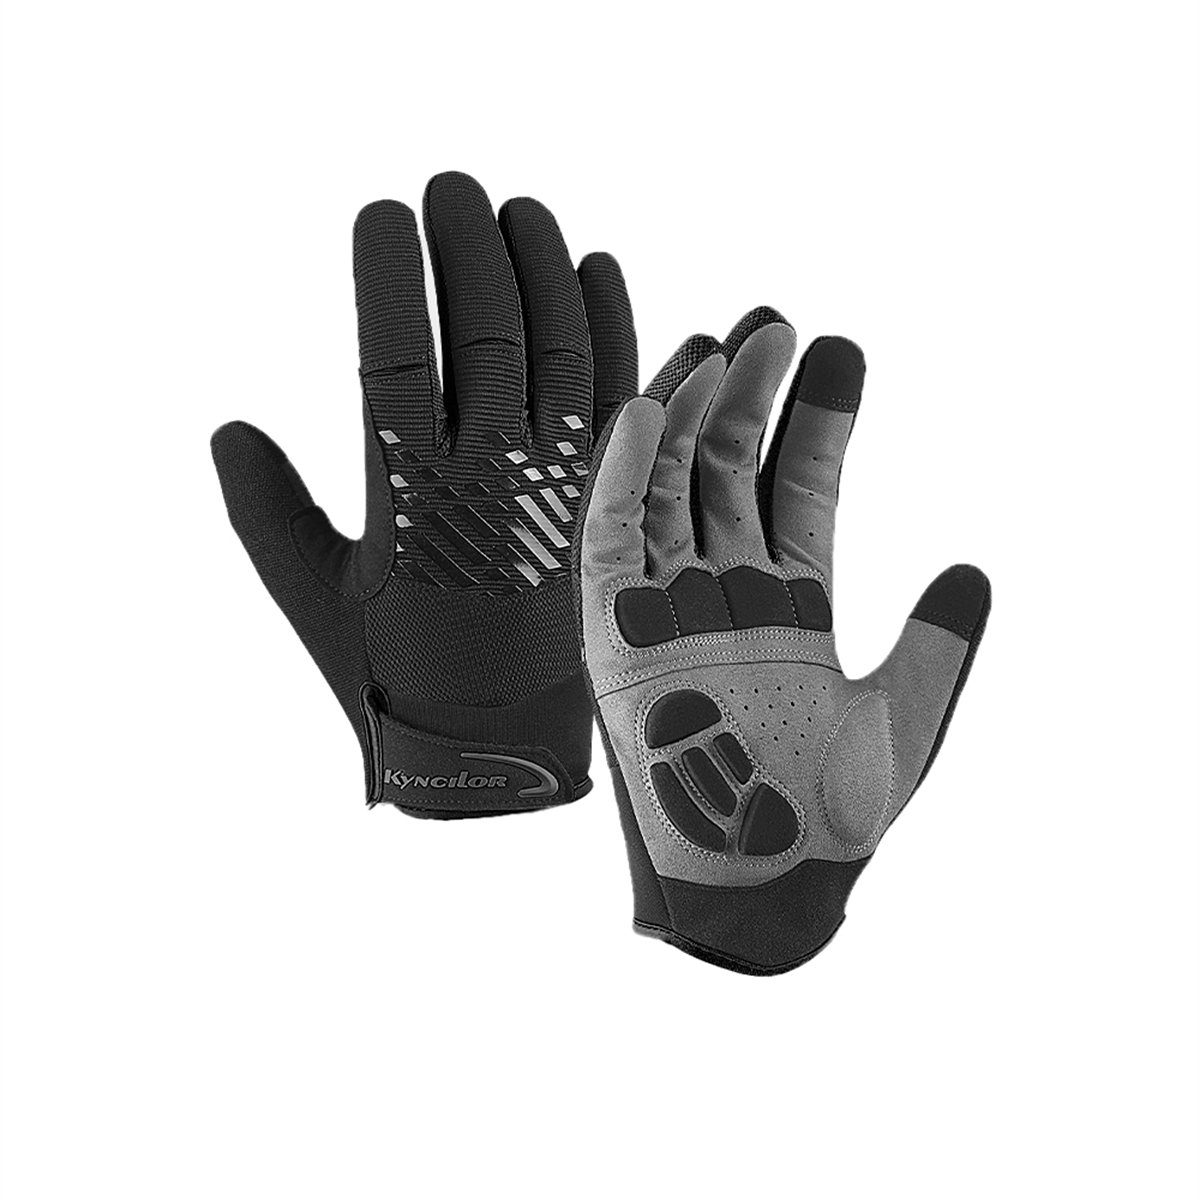 Discaver Fahrradhandschuhe Warme Sport-Touchscreen-Handschuhe für das Radfahren im Freien Wasserdicht, kältebeständig, rutschfest und samtig Schwarz